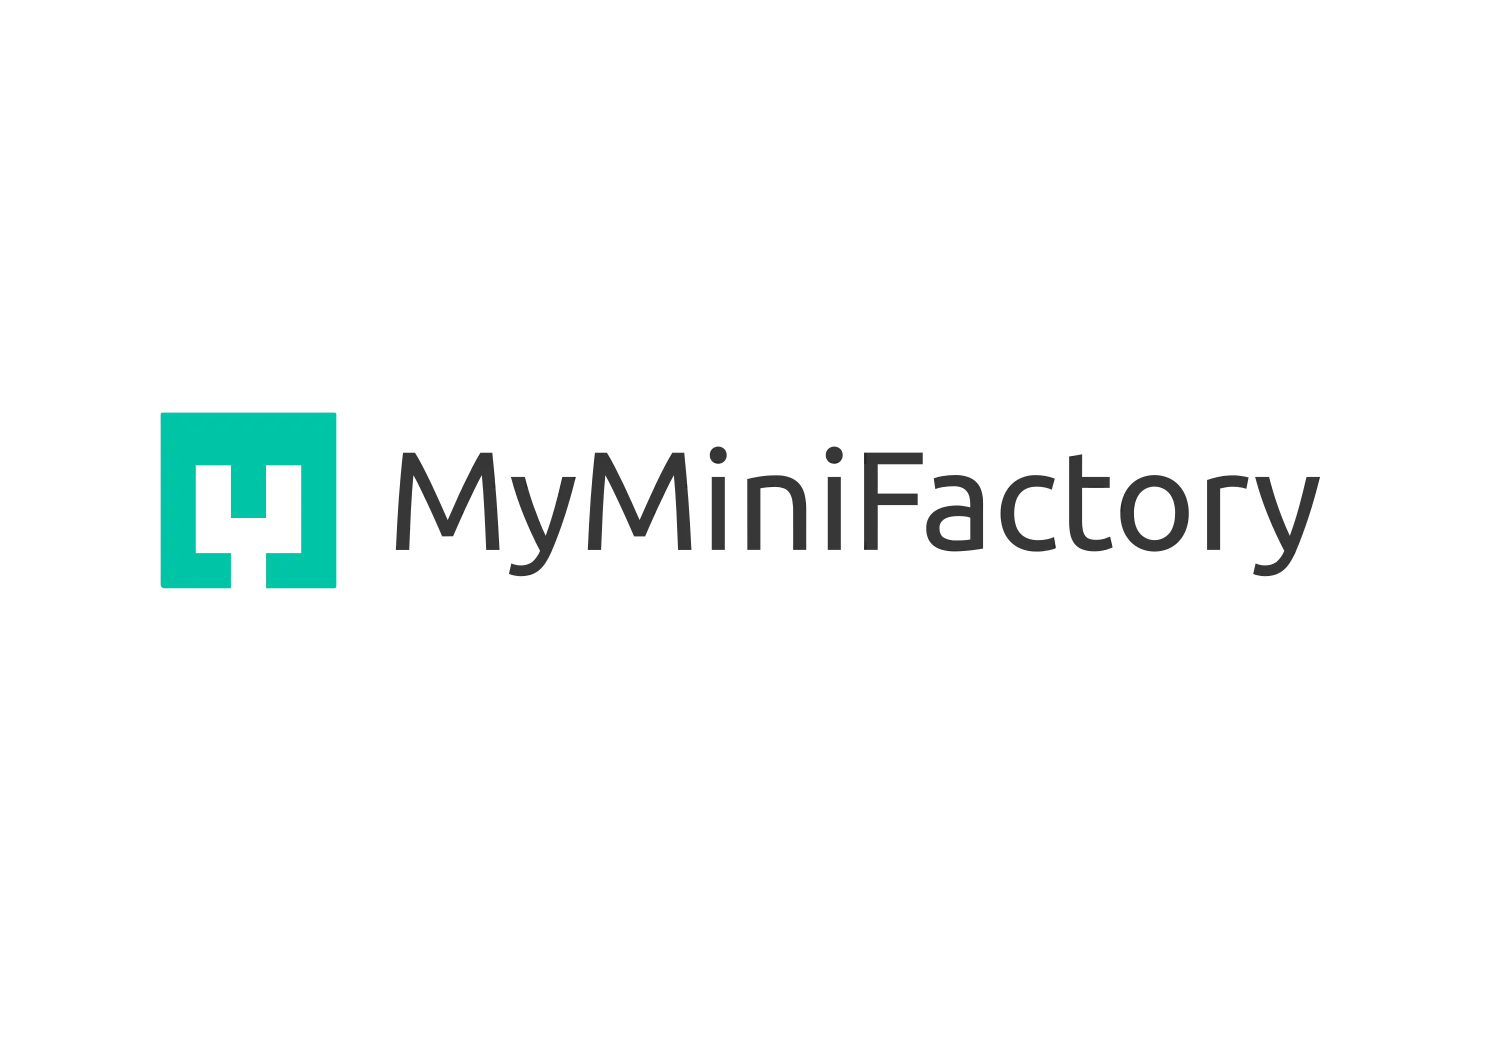 3D Printing Sites MyMinifactory (stemfie.org)